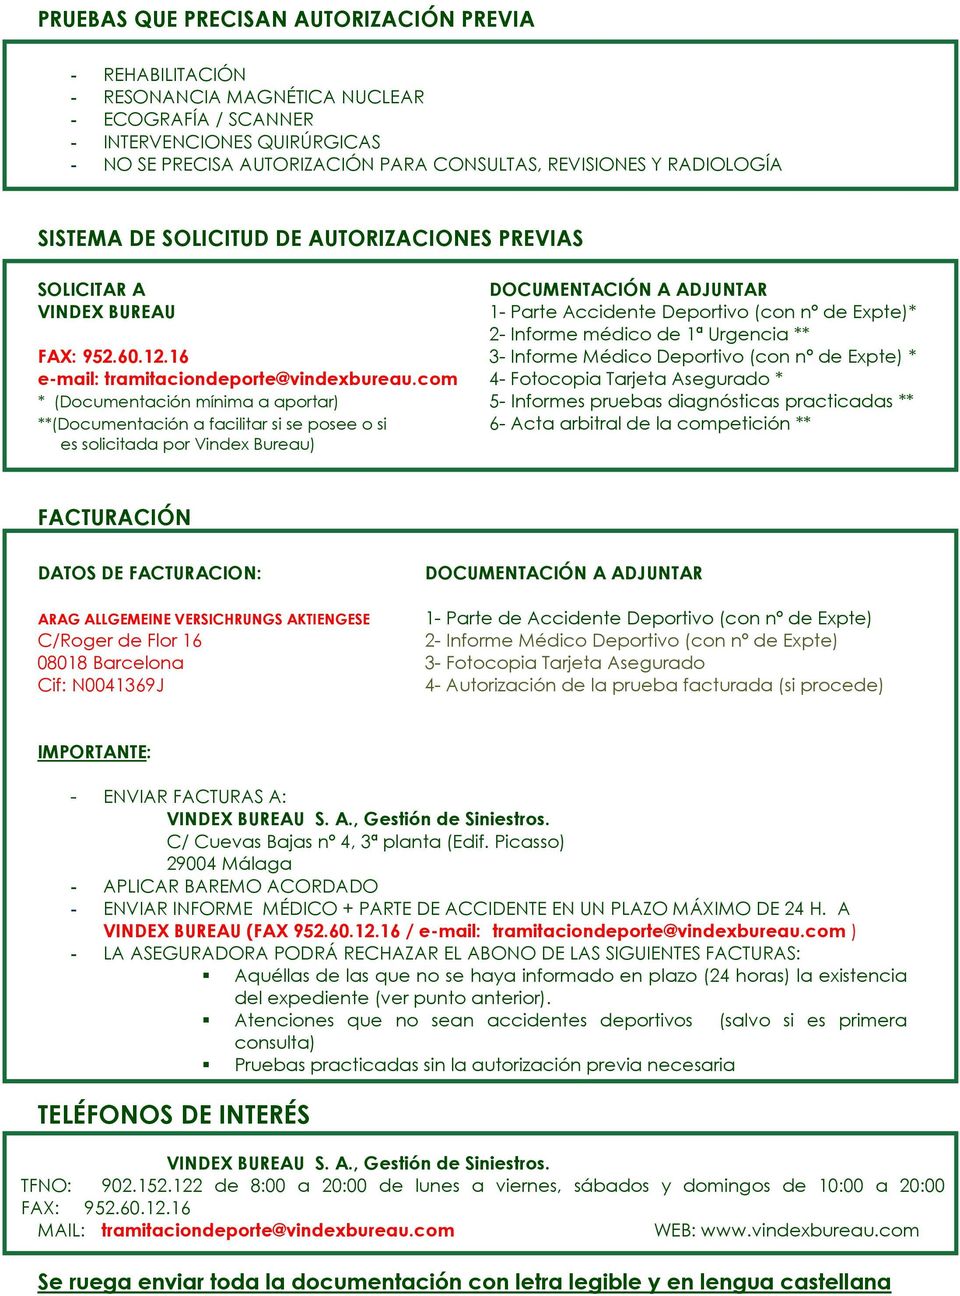 952.60.12.16 3- Informe Médico Deportivo (con nº de Expte) * e-mail: tramitaciondeporte@vindexbureau.